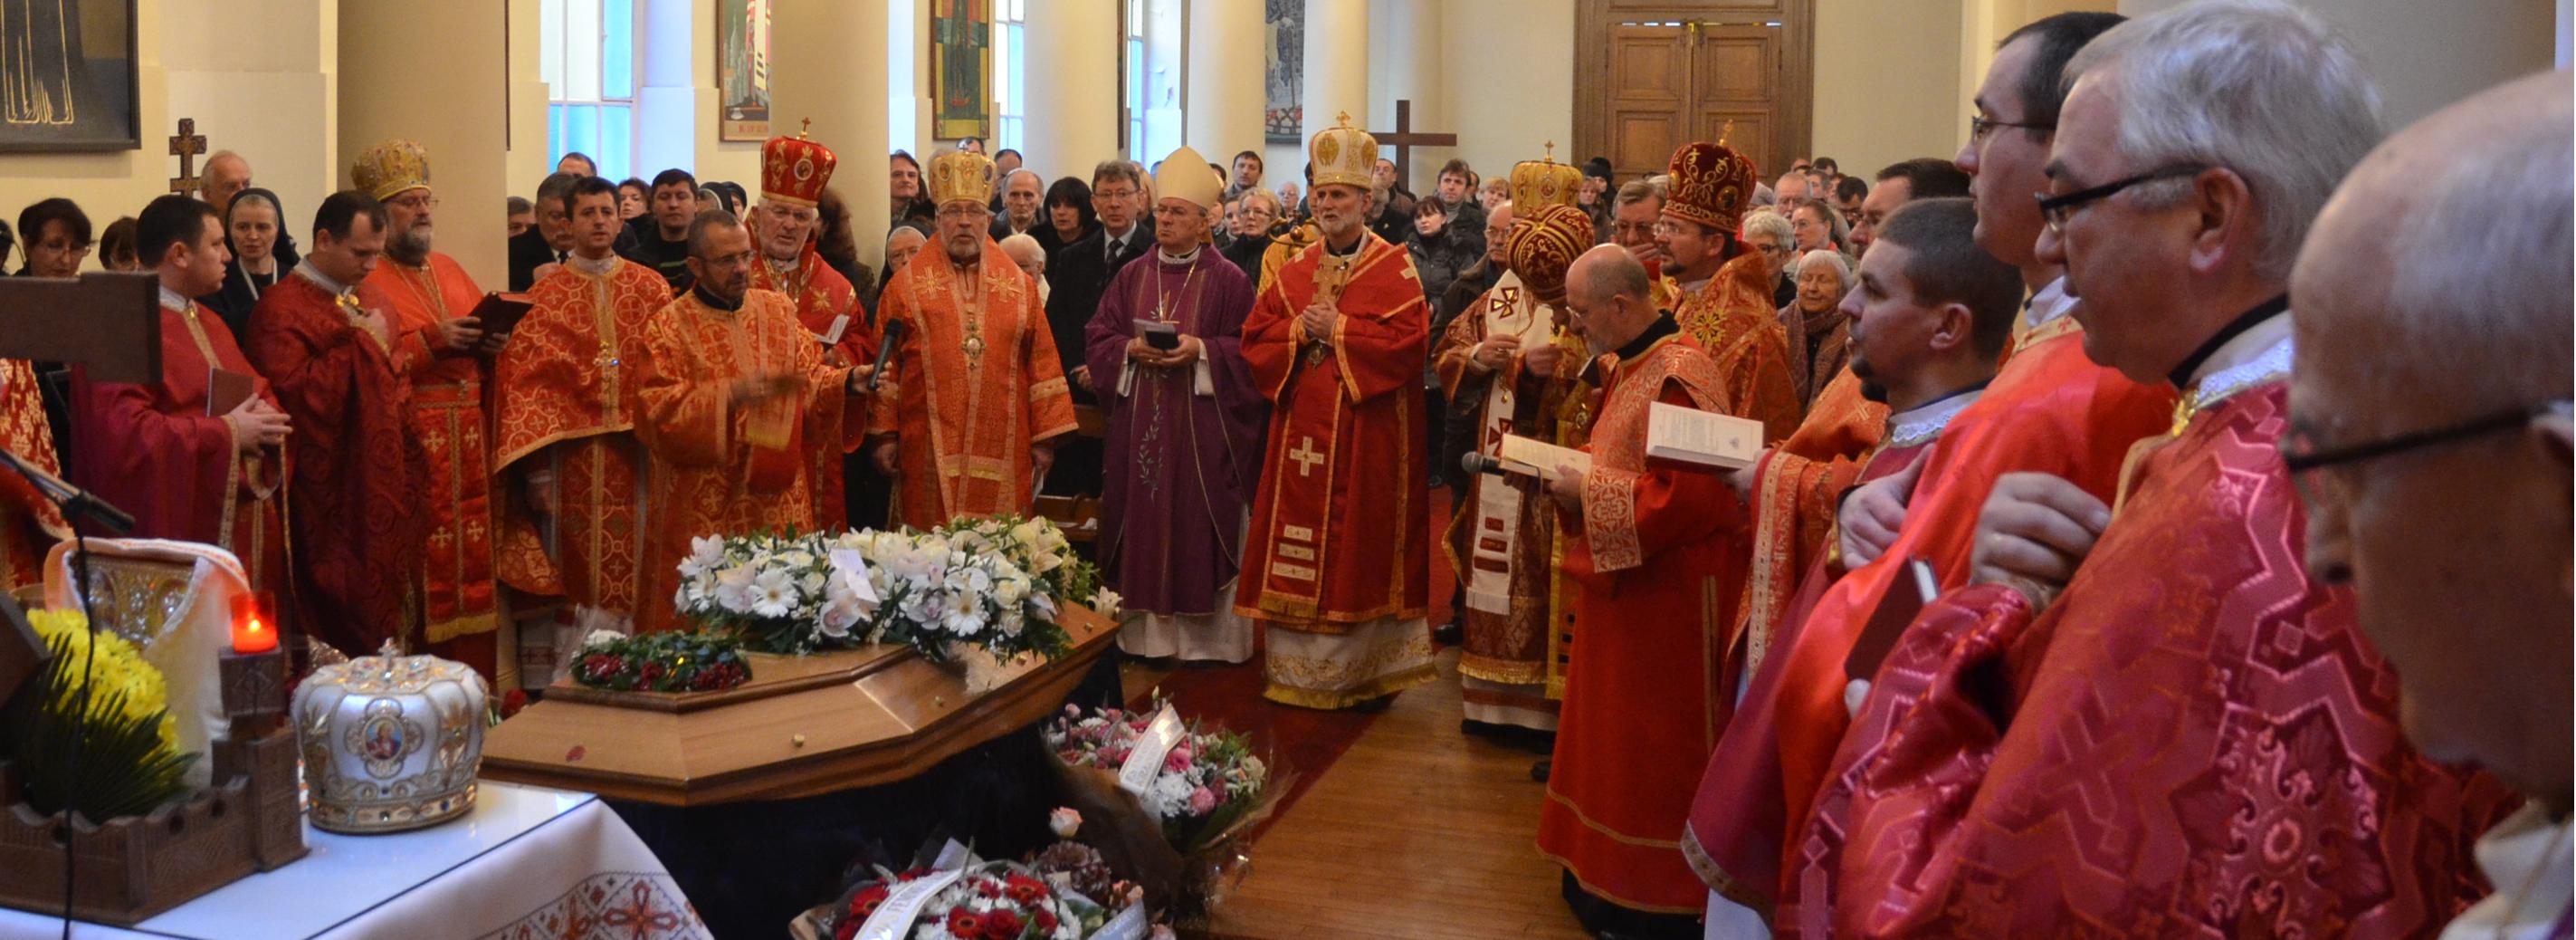 prière pour les défunts - Tradition Gréco-Catholique Ukrainienne (Byzantin)